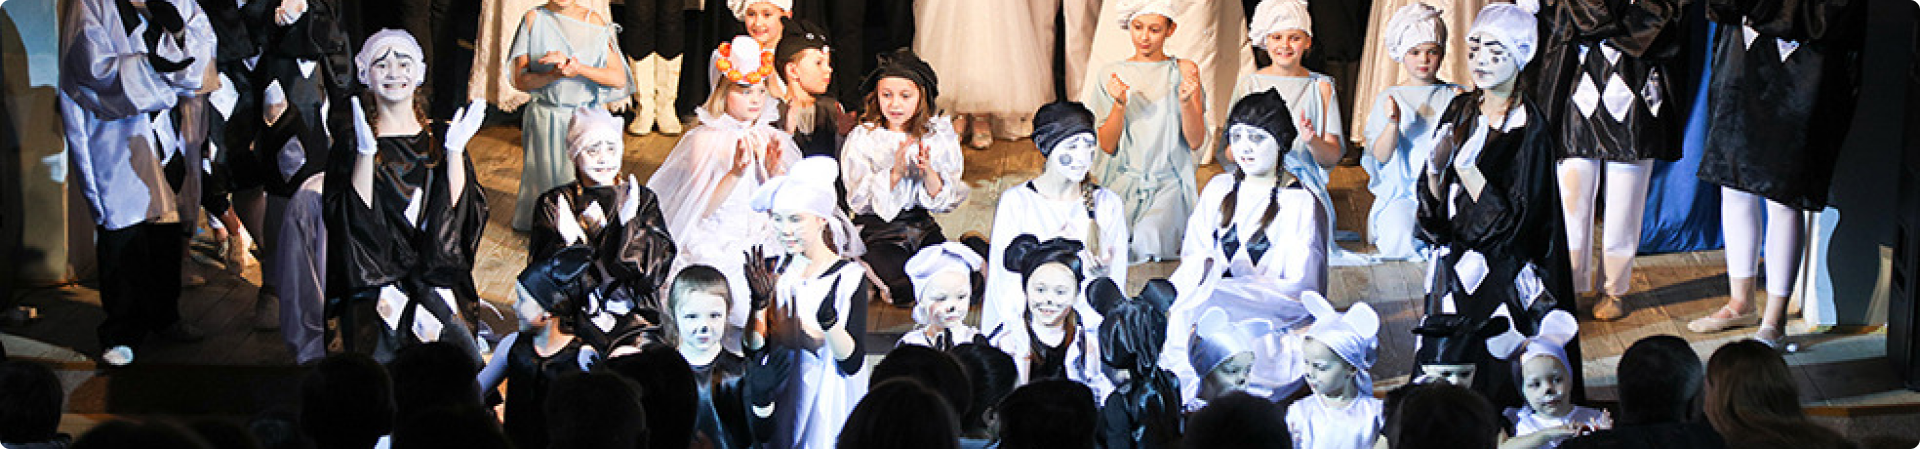 Новогодние утренники и детские спектакли в Ясной Поляне